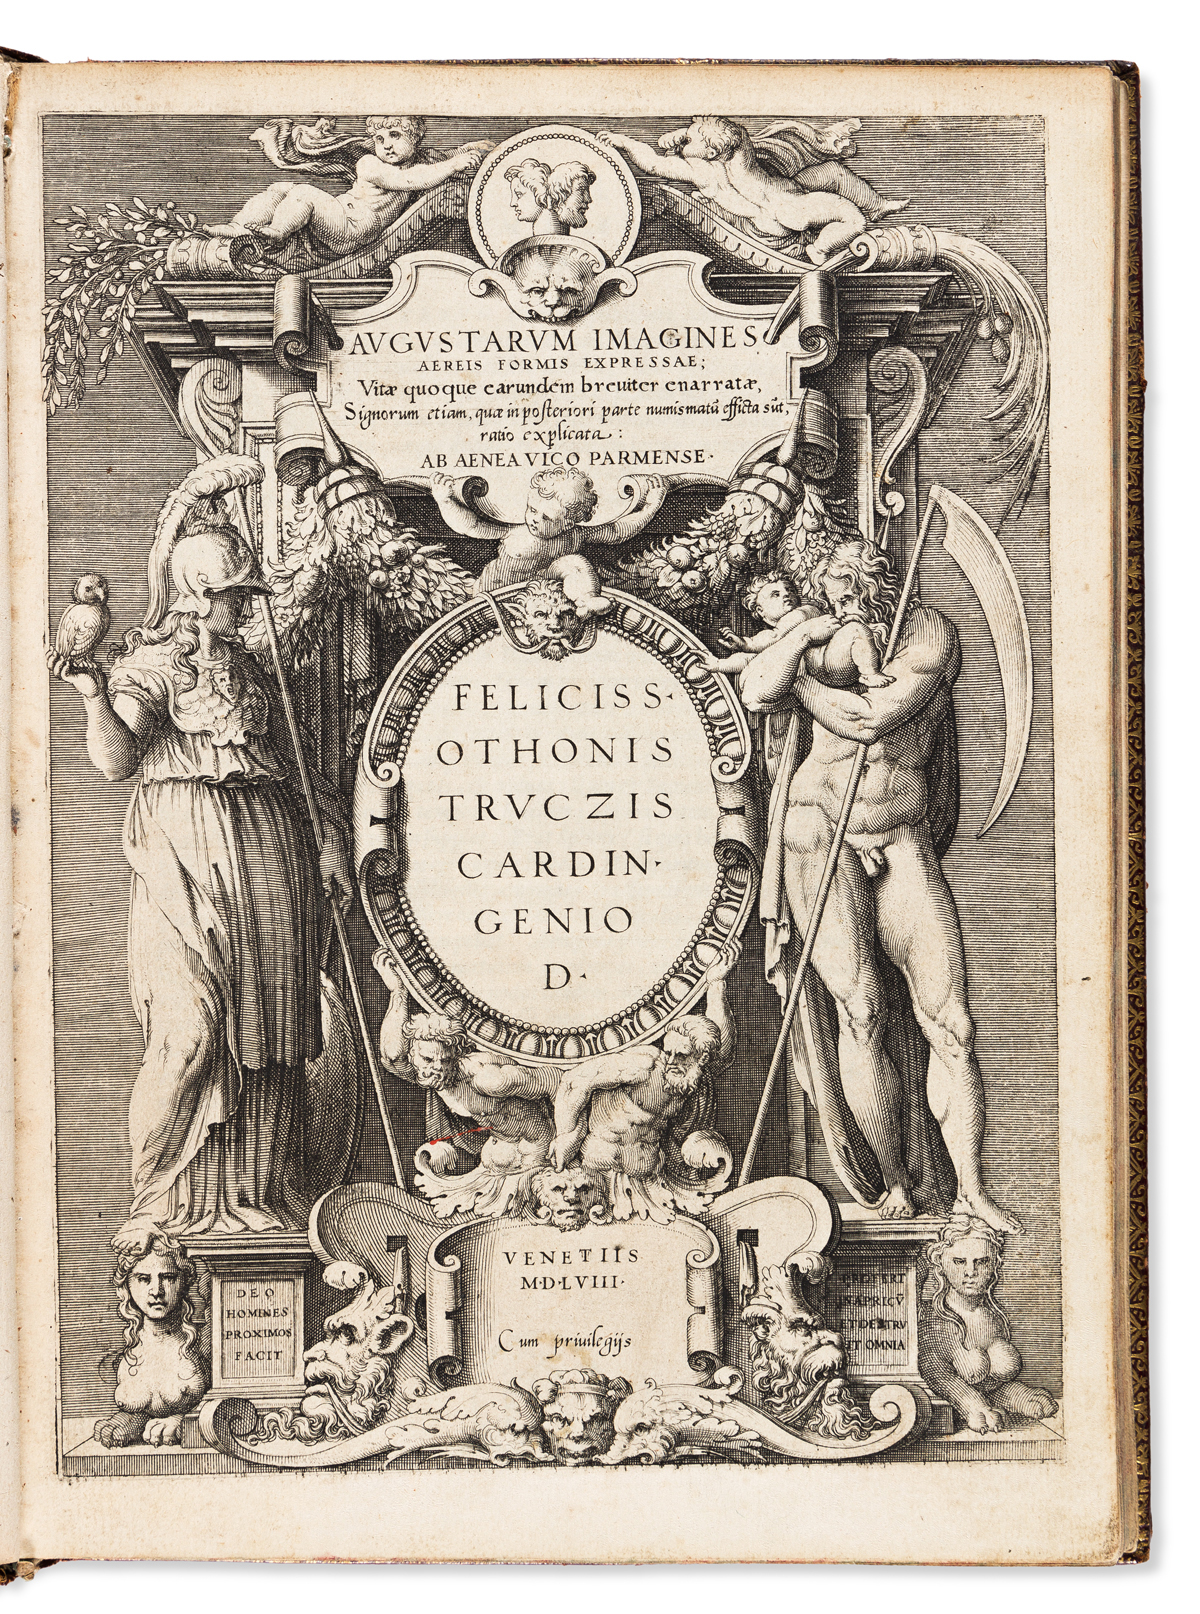 Vico, Enea (1523-1567); trans. Natale Conti (1520-1582) Augustarum Imagines Aereis Formis Expressae; Vitae quoque earundem breviter ena